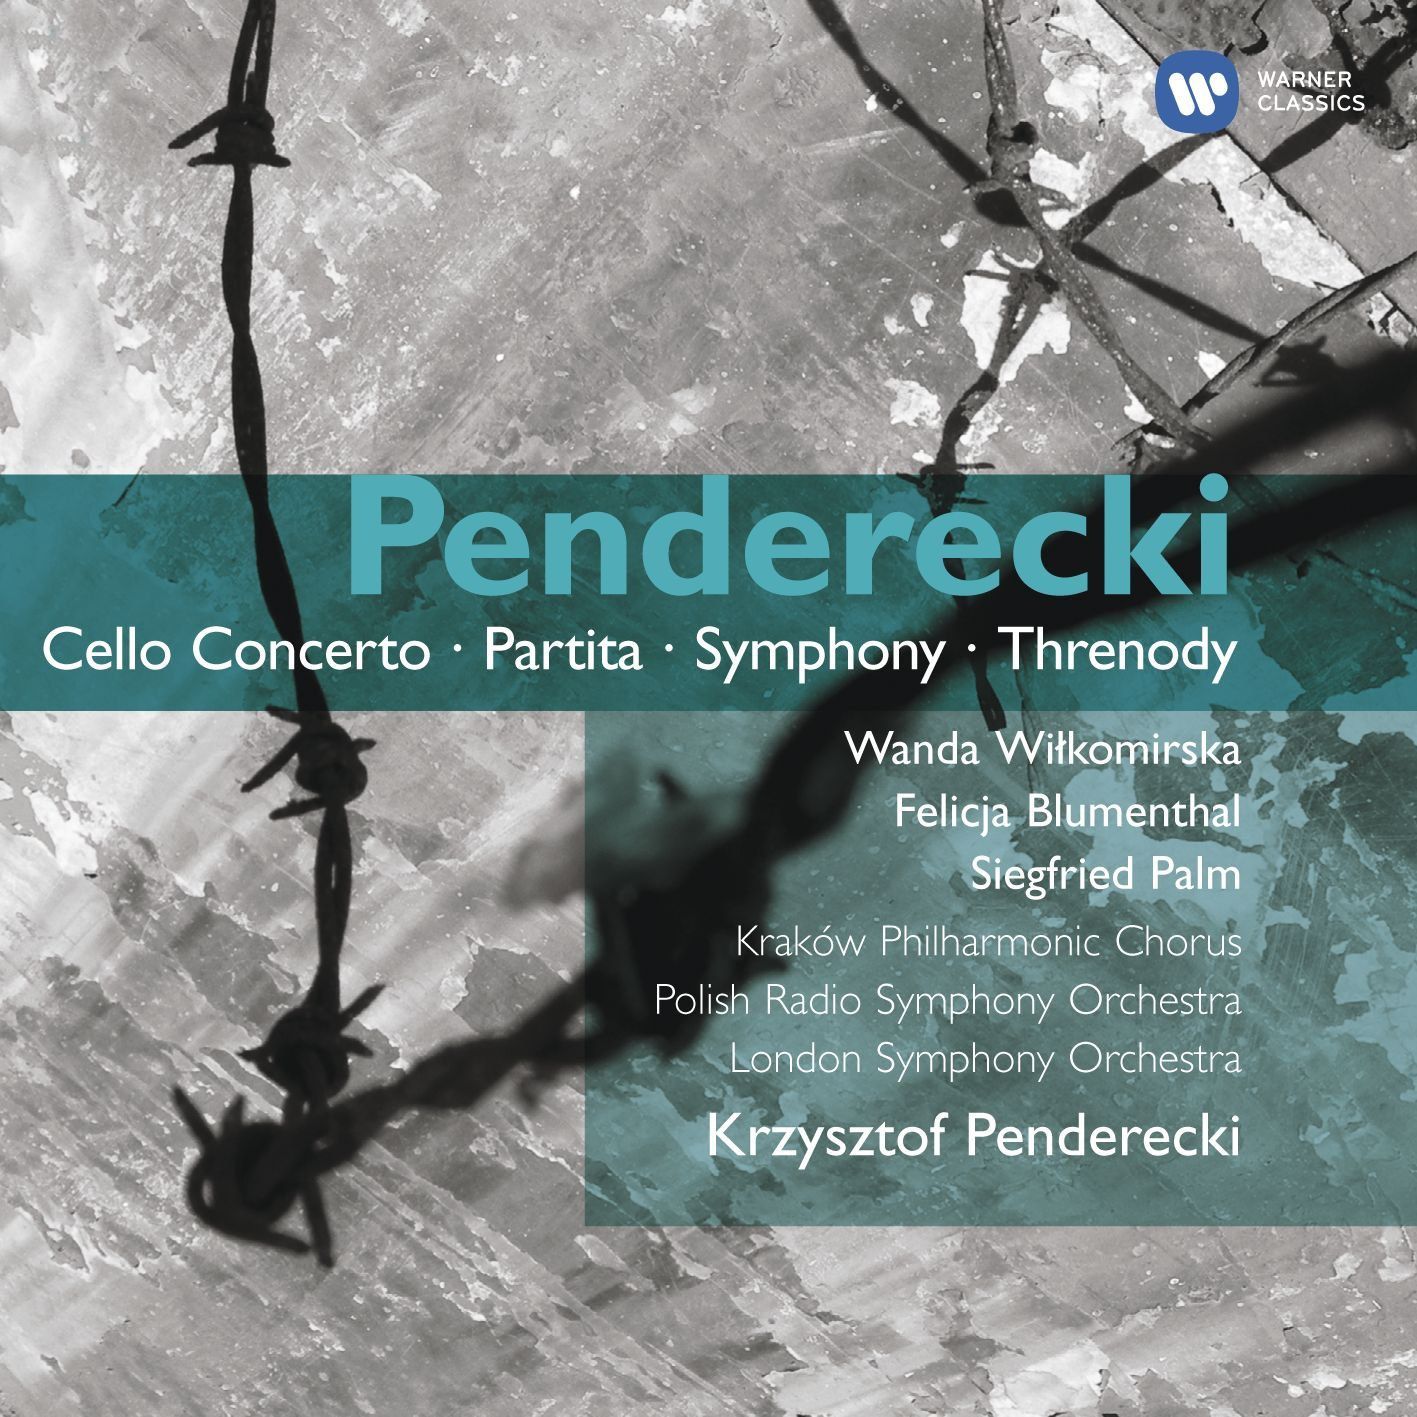 Krzysztof Penderecki 'Cello Concerto, Partita, Symphony, Threnody' CD2/2007/Classic/Europe